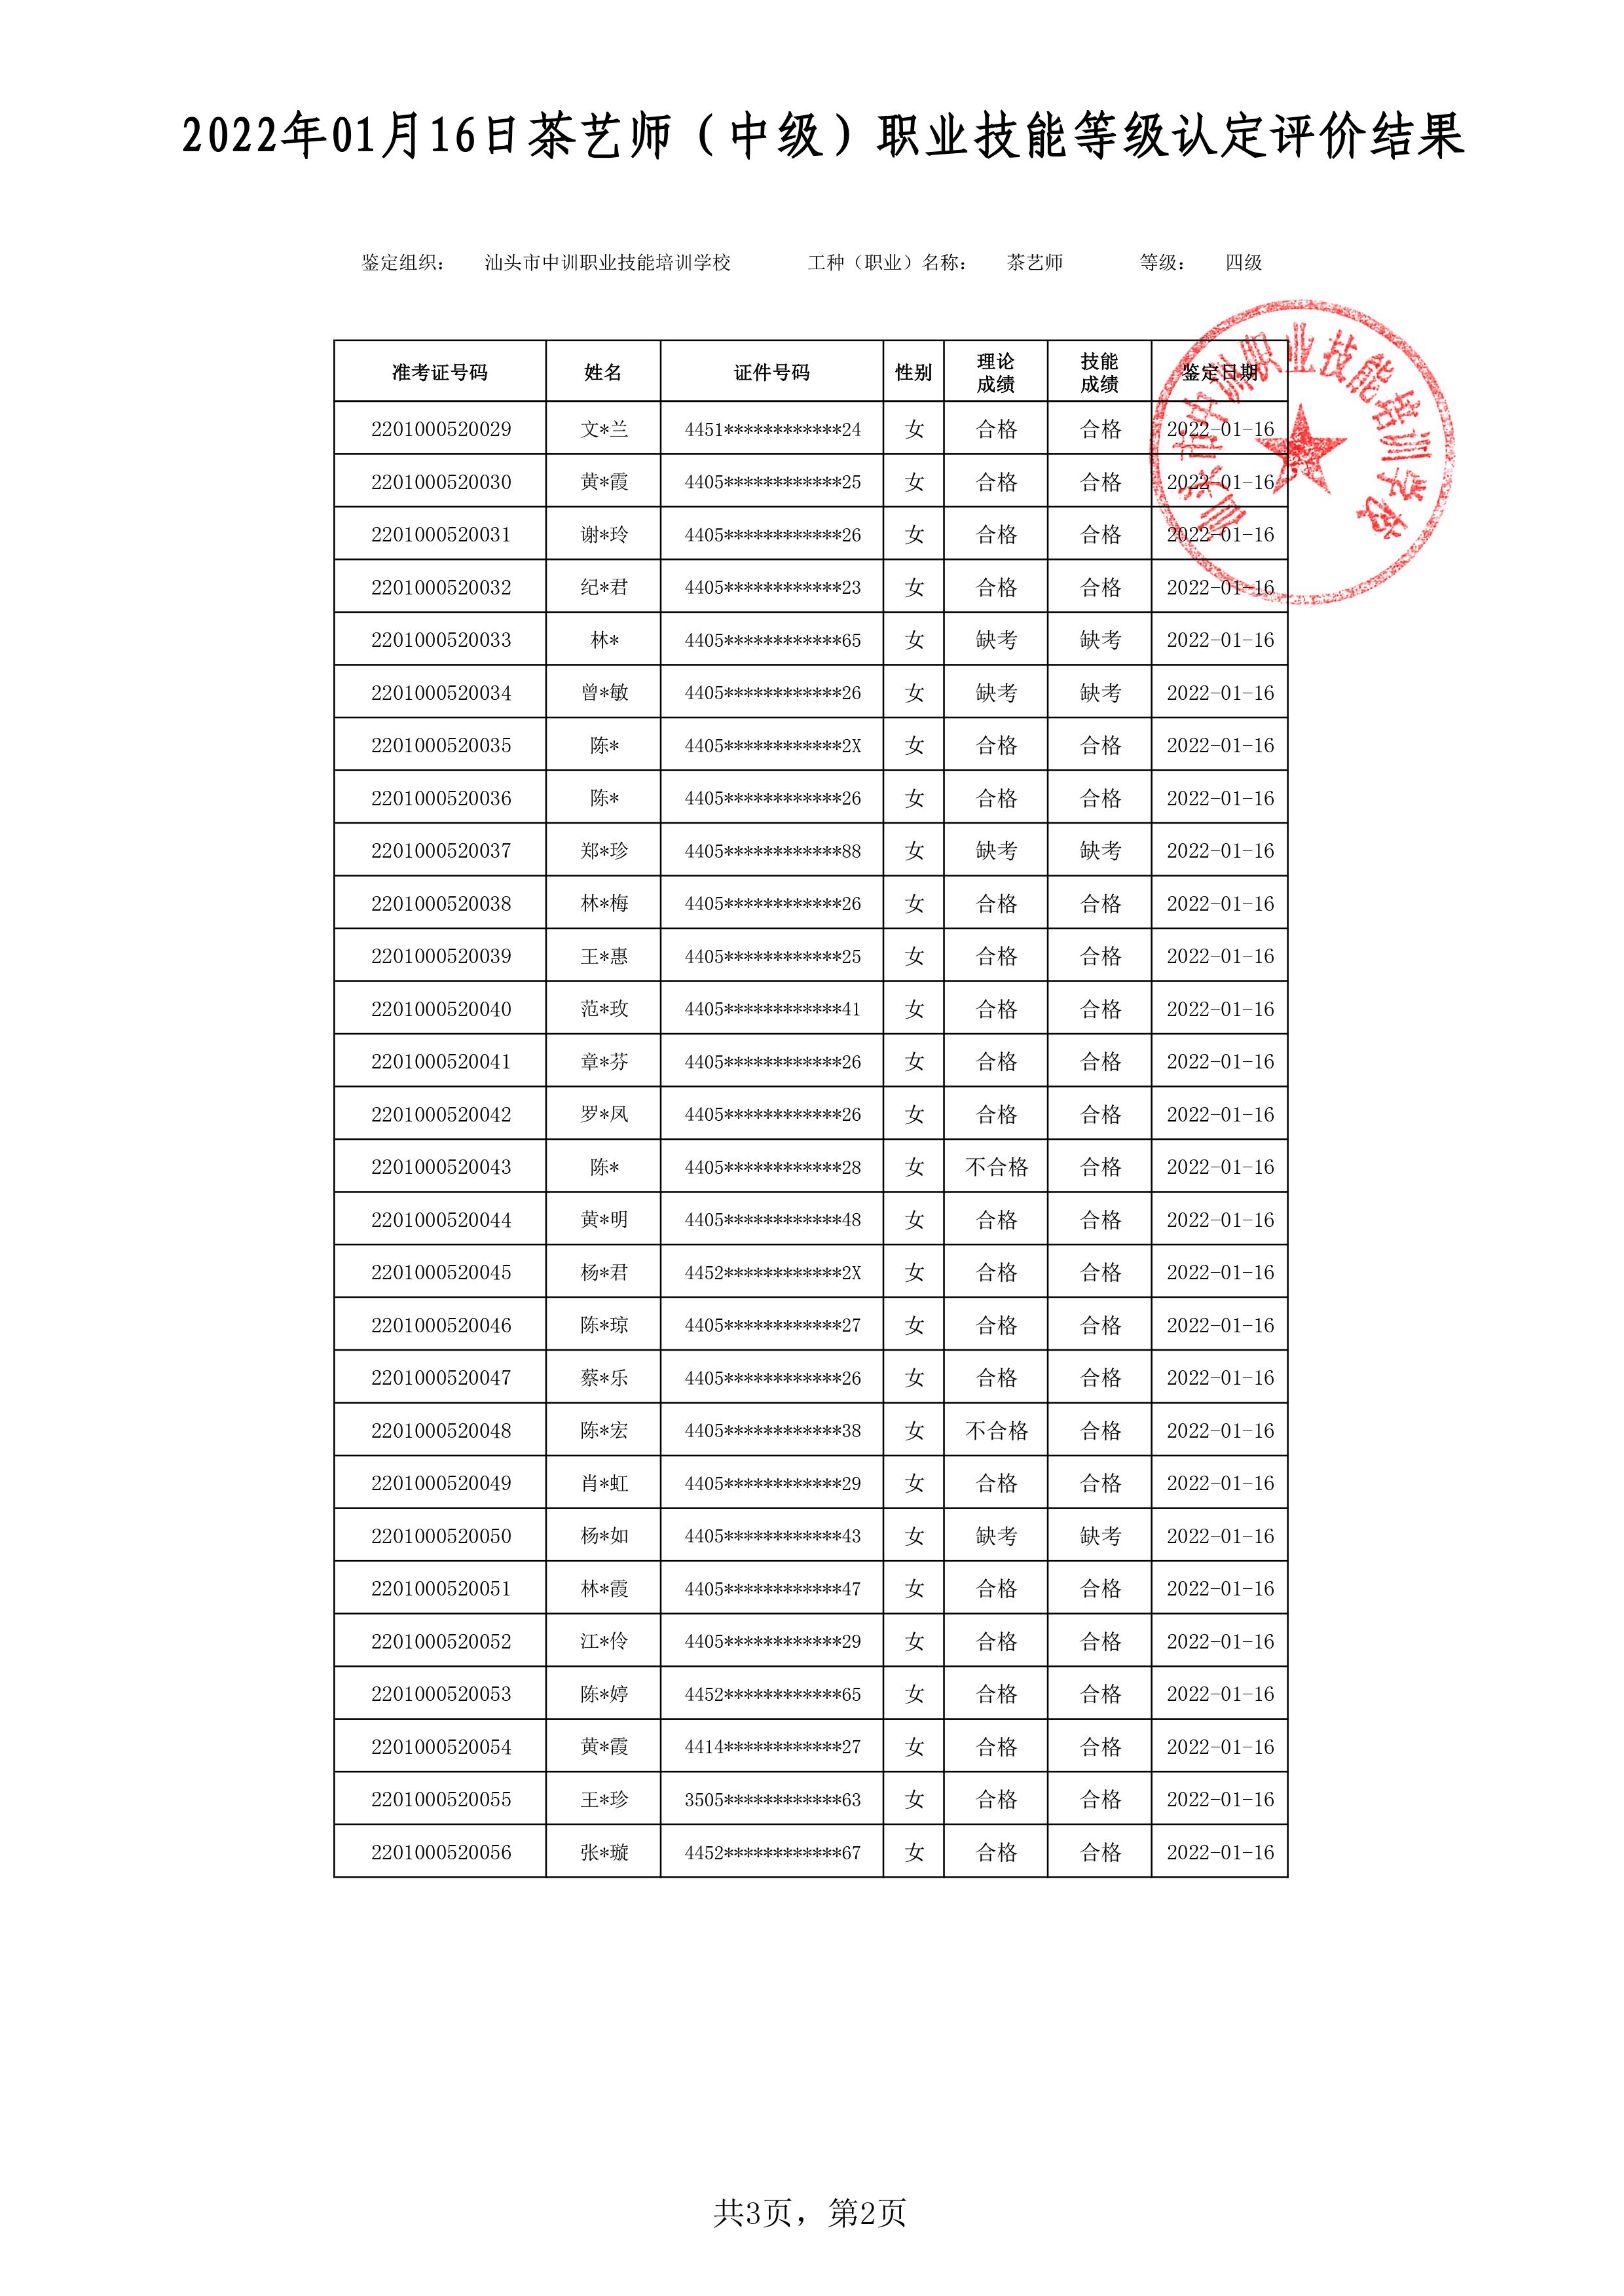 22-01-16四级茶艺师考试鉴定名册表 -2 副本.jpg